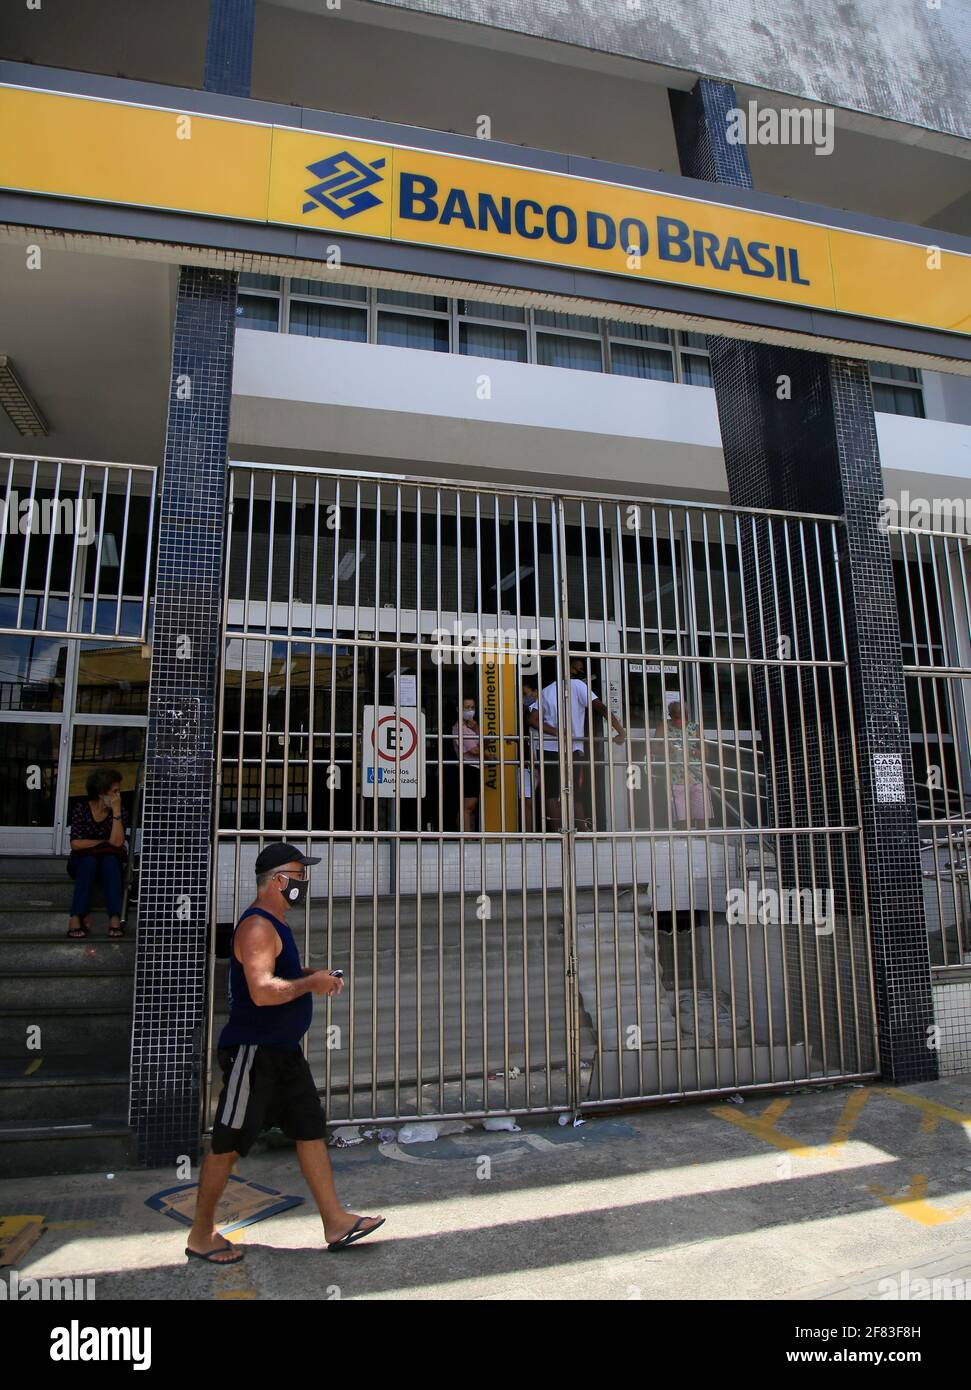 salvador, bahia, brazil - january 27, 2021: facade of the Banco do